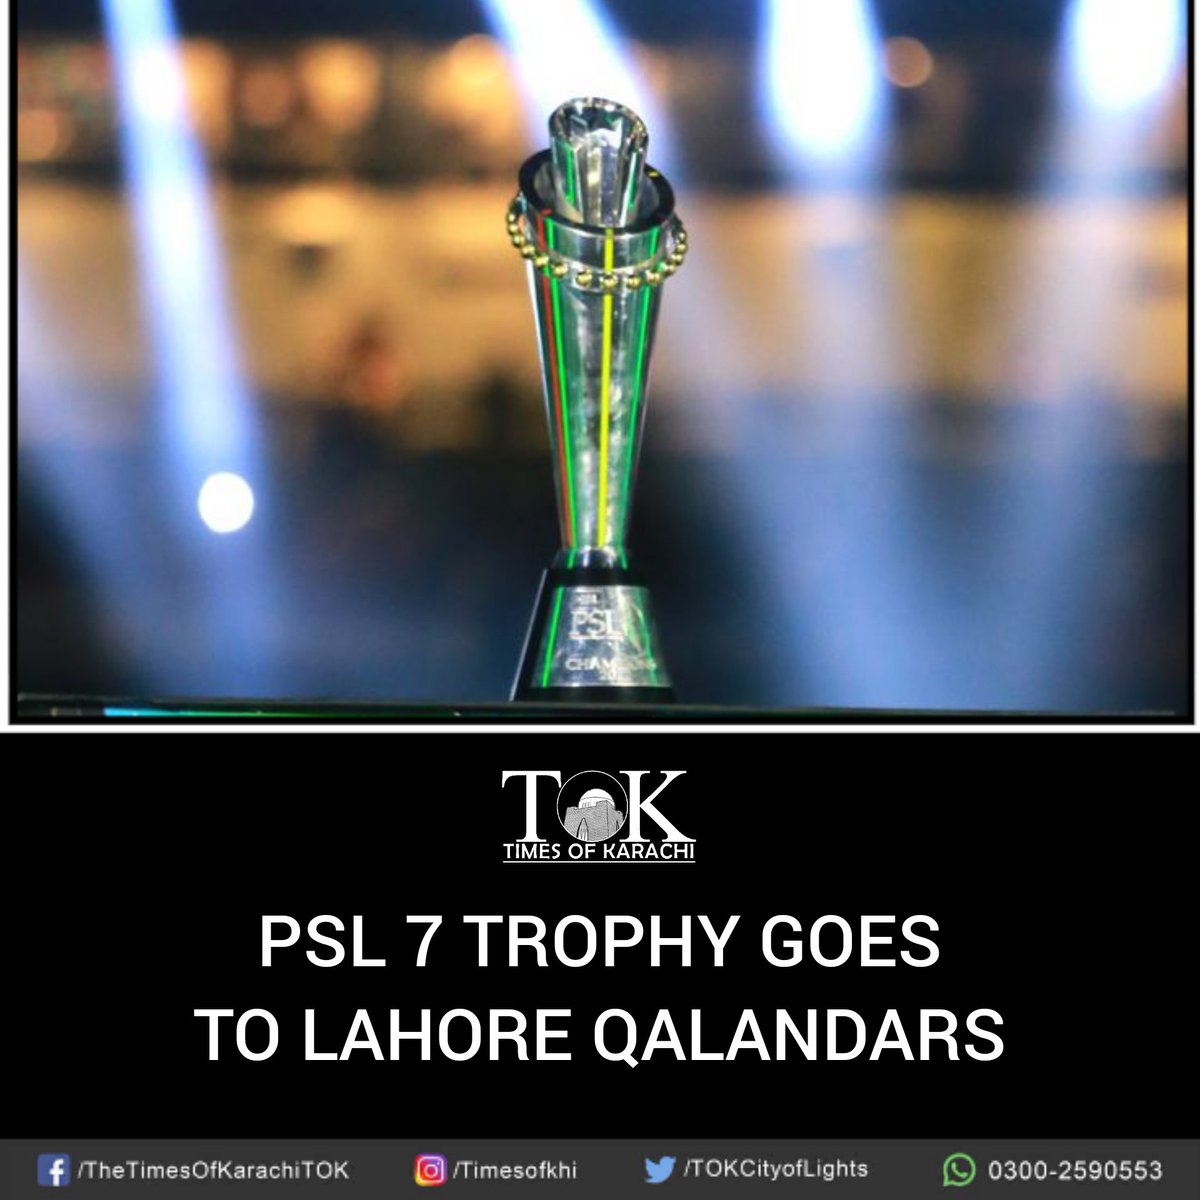 The Pakistan Super League has it's own unique racy pulse that exhibits excellence through instinctive cricket. What more can you want!
#HBLPSL7 
#PakistanSuperLeague